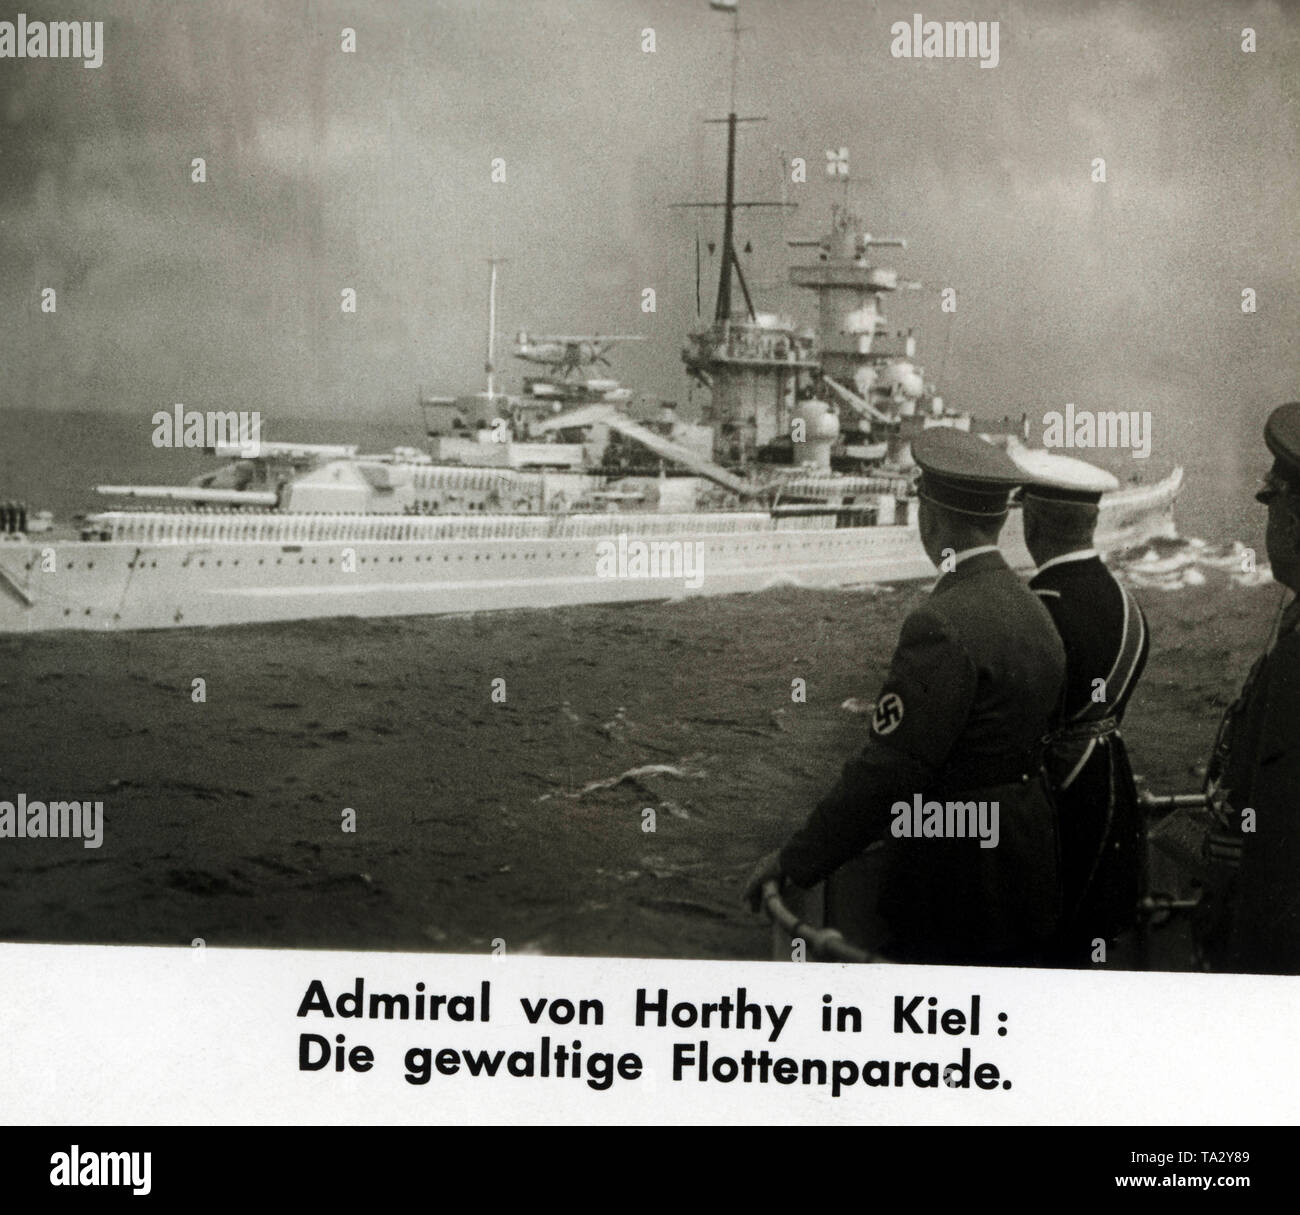 Revisione della flotta in onore della visita di Adolf Hitler e il suo ospite, Ammiraglio Horthy, reggente di Ungheria. La foto mostra il passaggio "battleship Gneisenau', i marinai sono in piedi nella formazione di parata. La flotta parade ha avuto luogo nelle vicinanze del fiordo di Kiel. La foto mostra Adolf Hitler e Horthy è un filmstill da un Ufa-Wochenschau ( revisione settimanale). Foto Stock